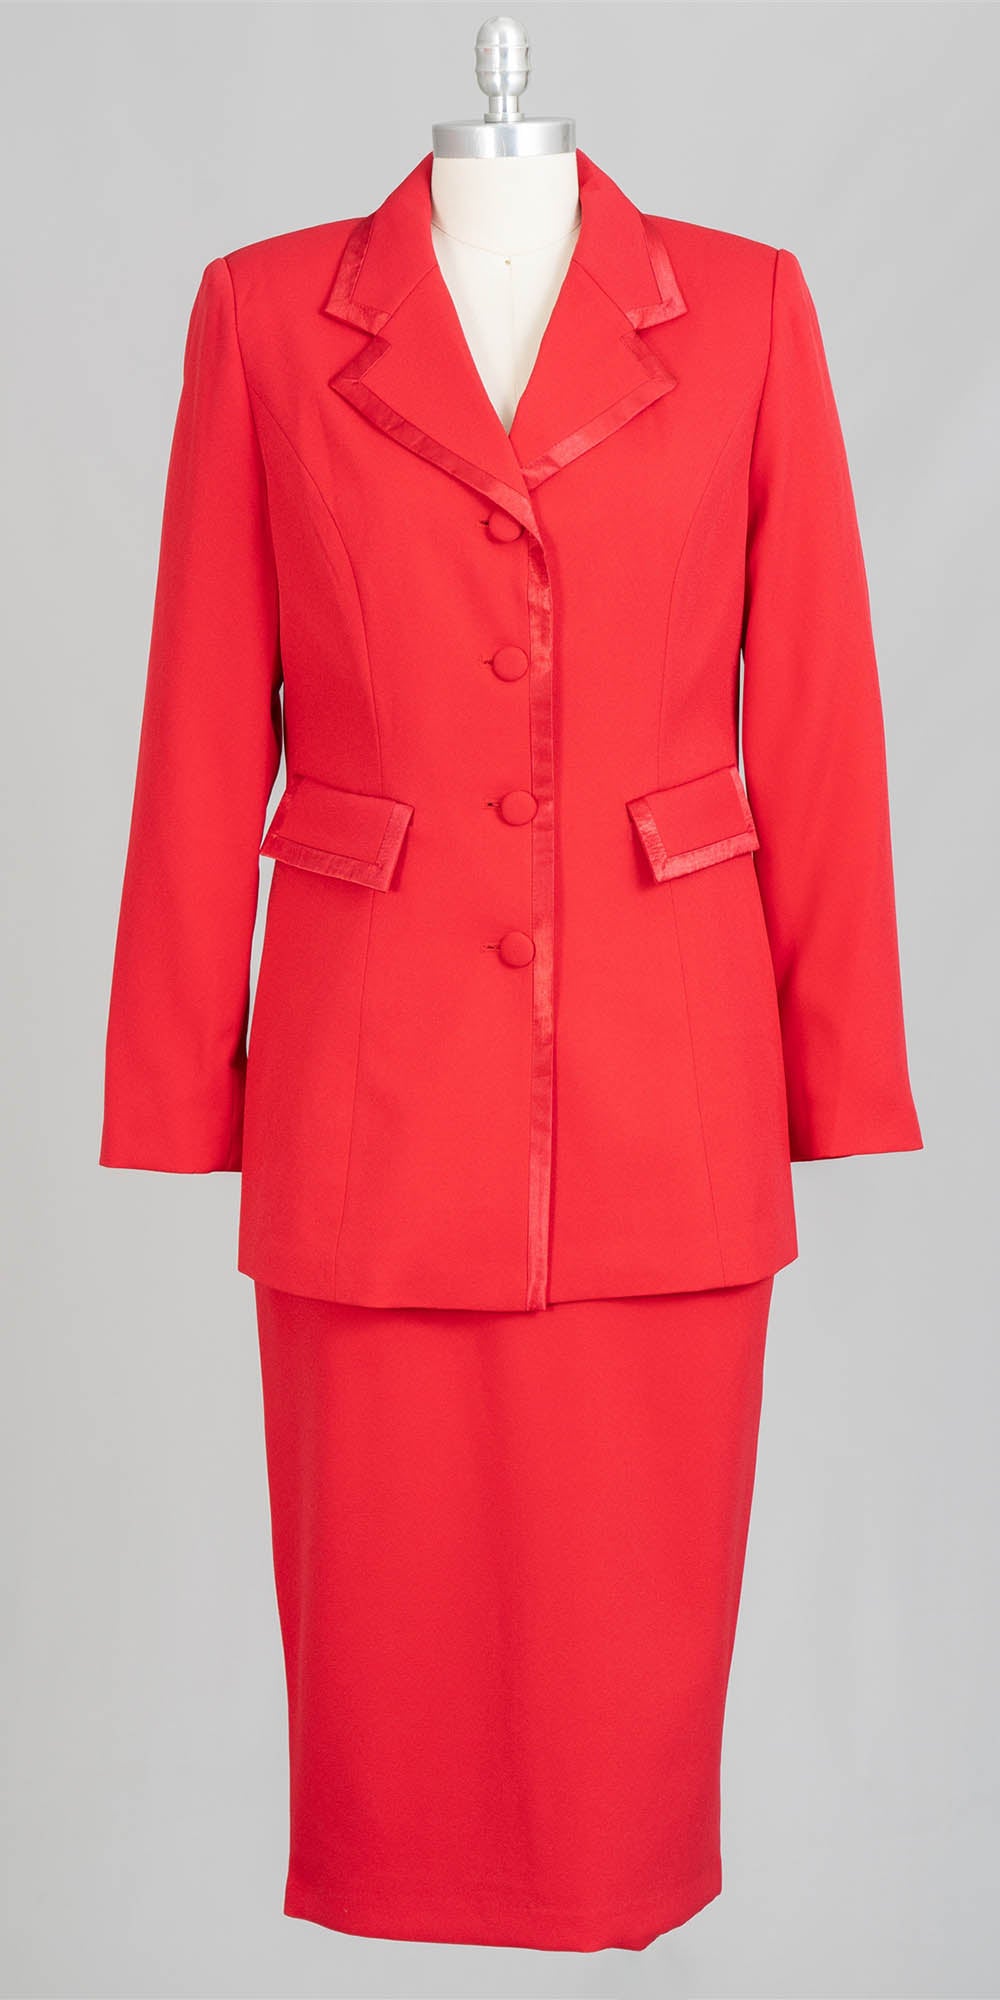 Aussie Austine - 11809 - Red - 2pc Skirt Suit